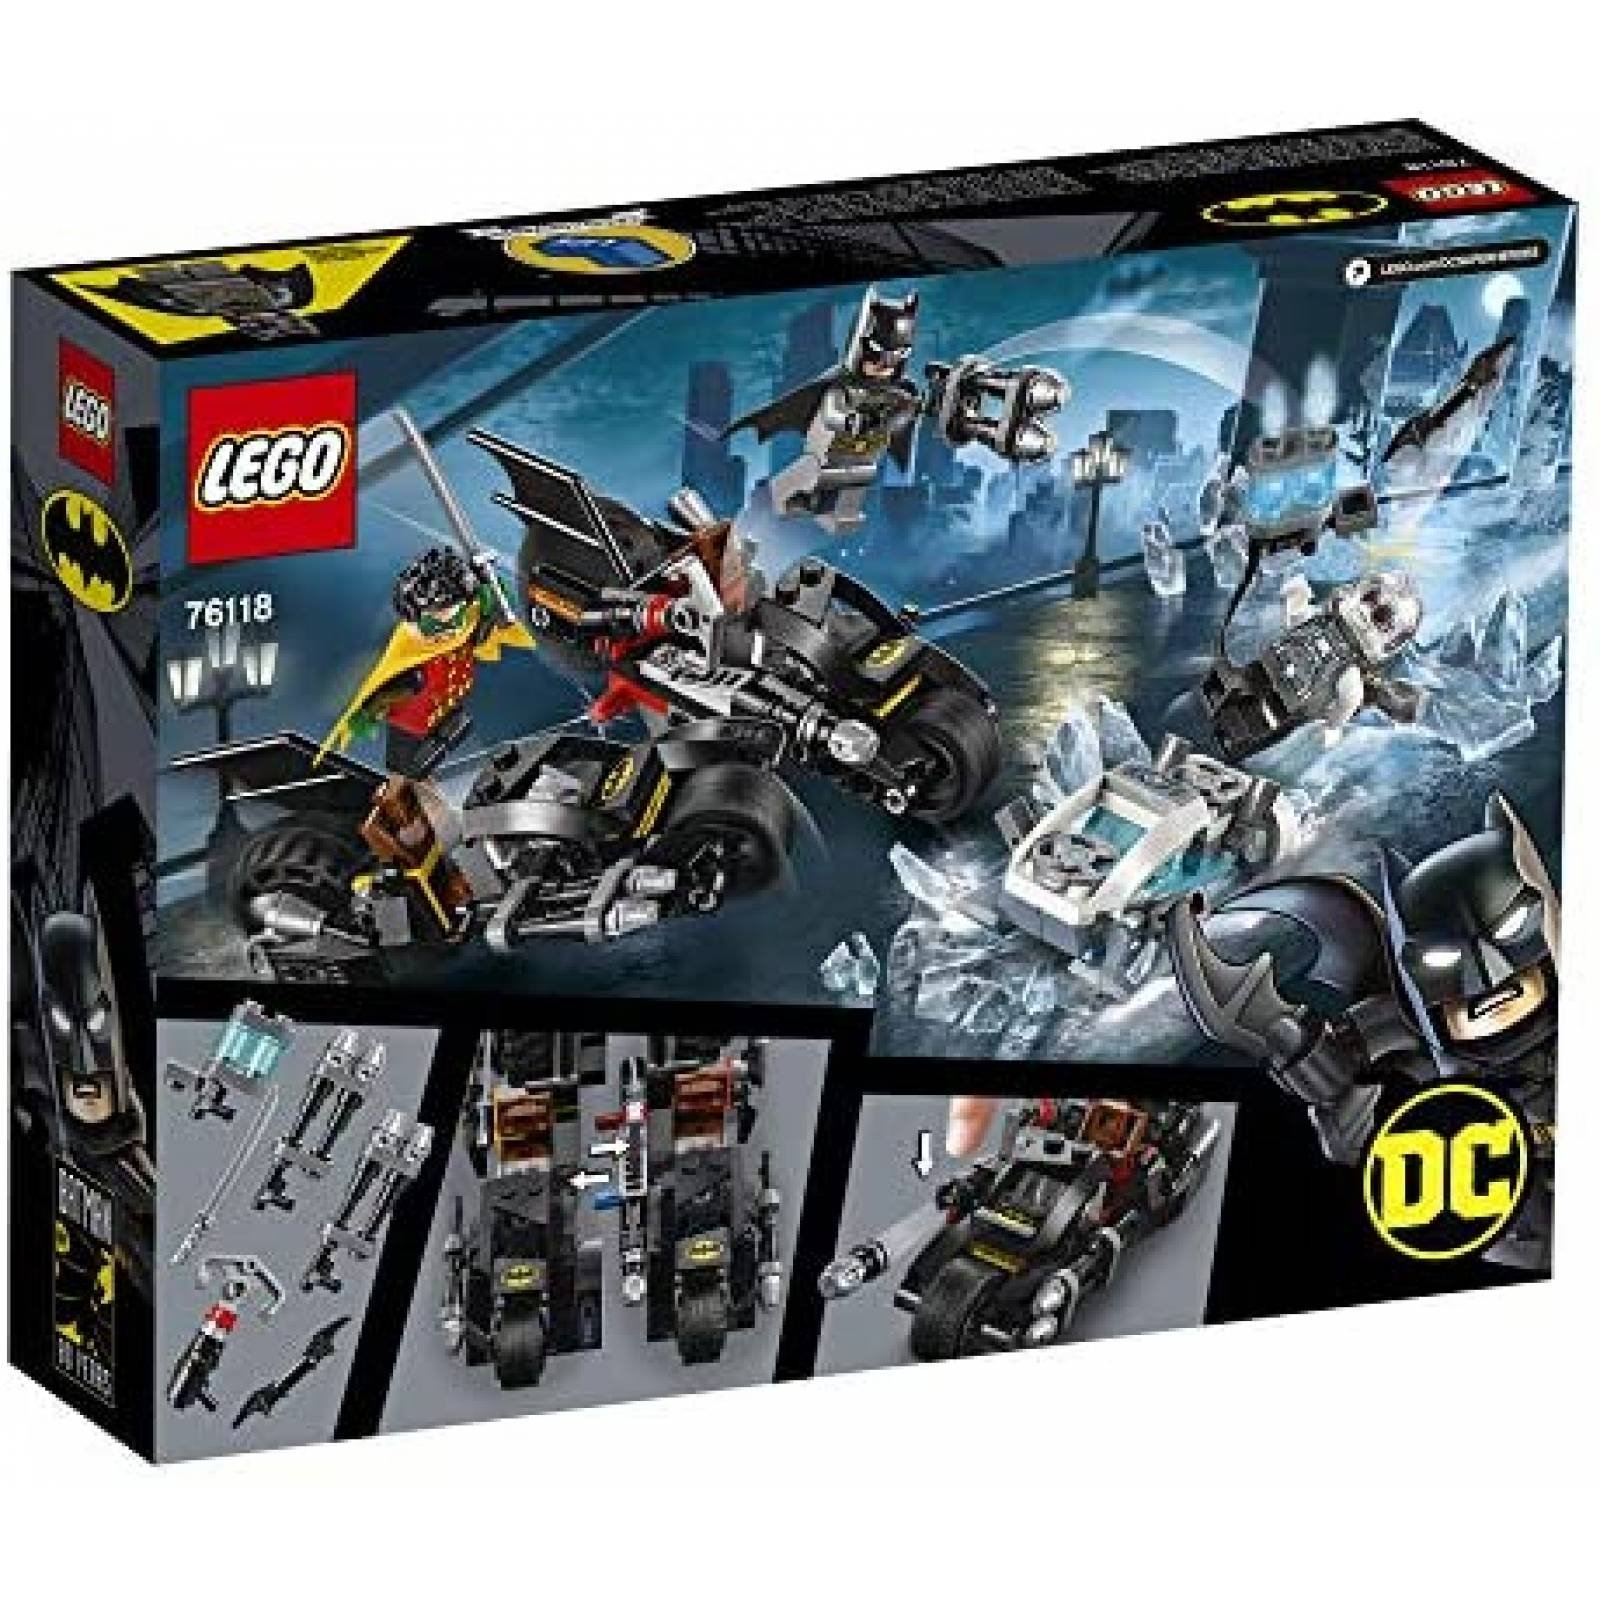 Set de Construcción LEGO Batman Mr. Freeze Batcycle 200 Pzs